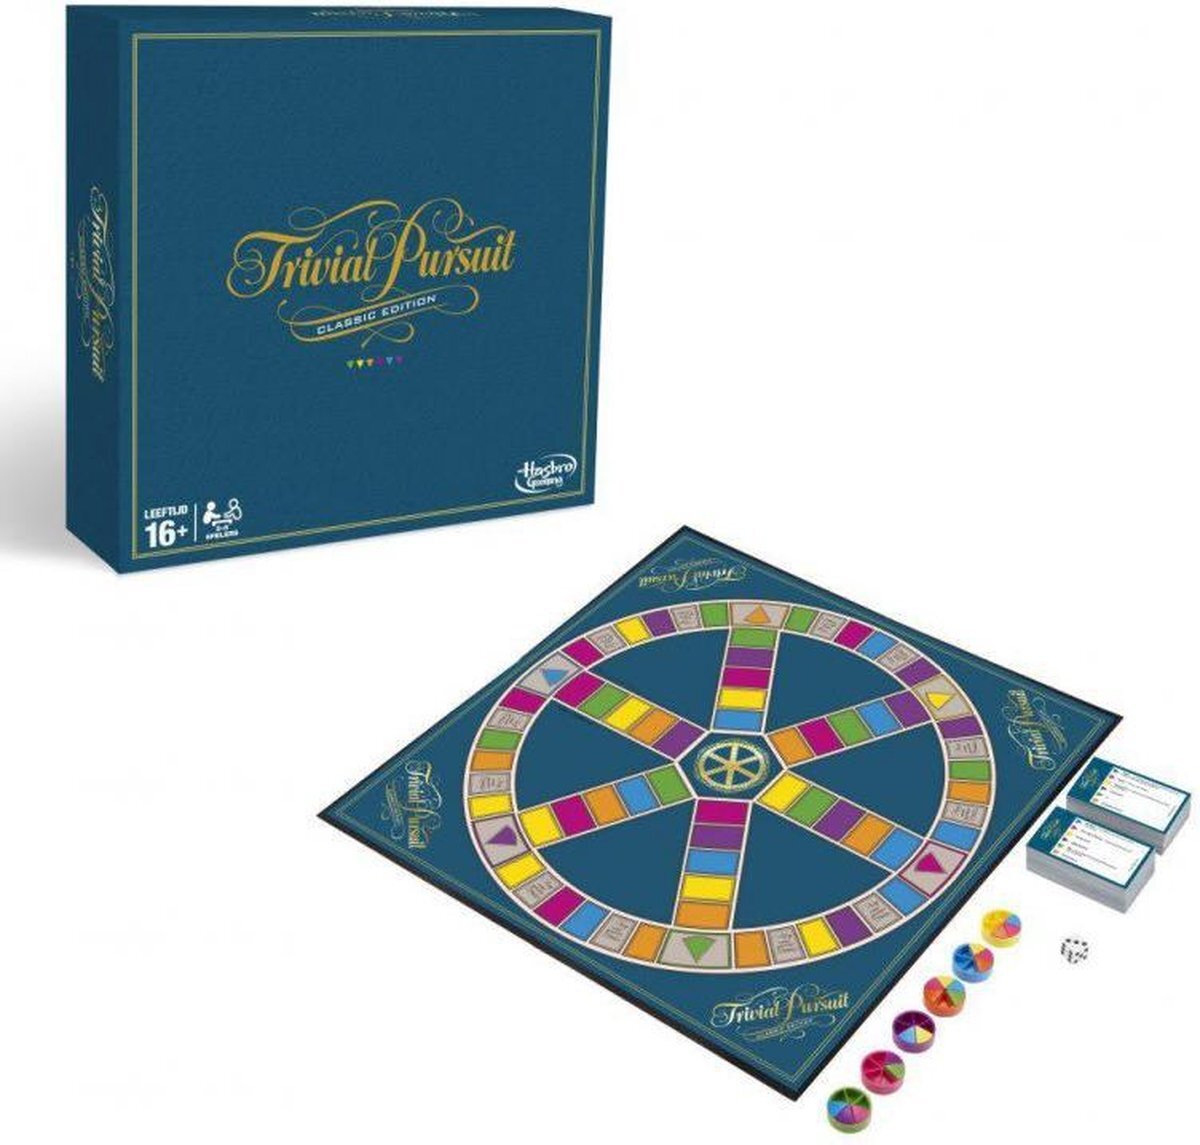 Hasbro C1940 Trivial Pursuit Spel, Classic Edition, Meerkleurig